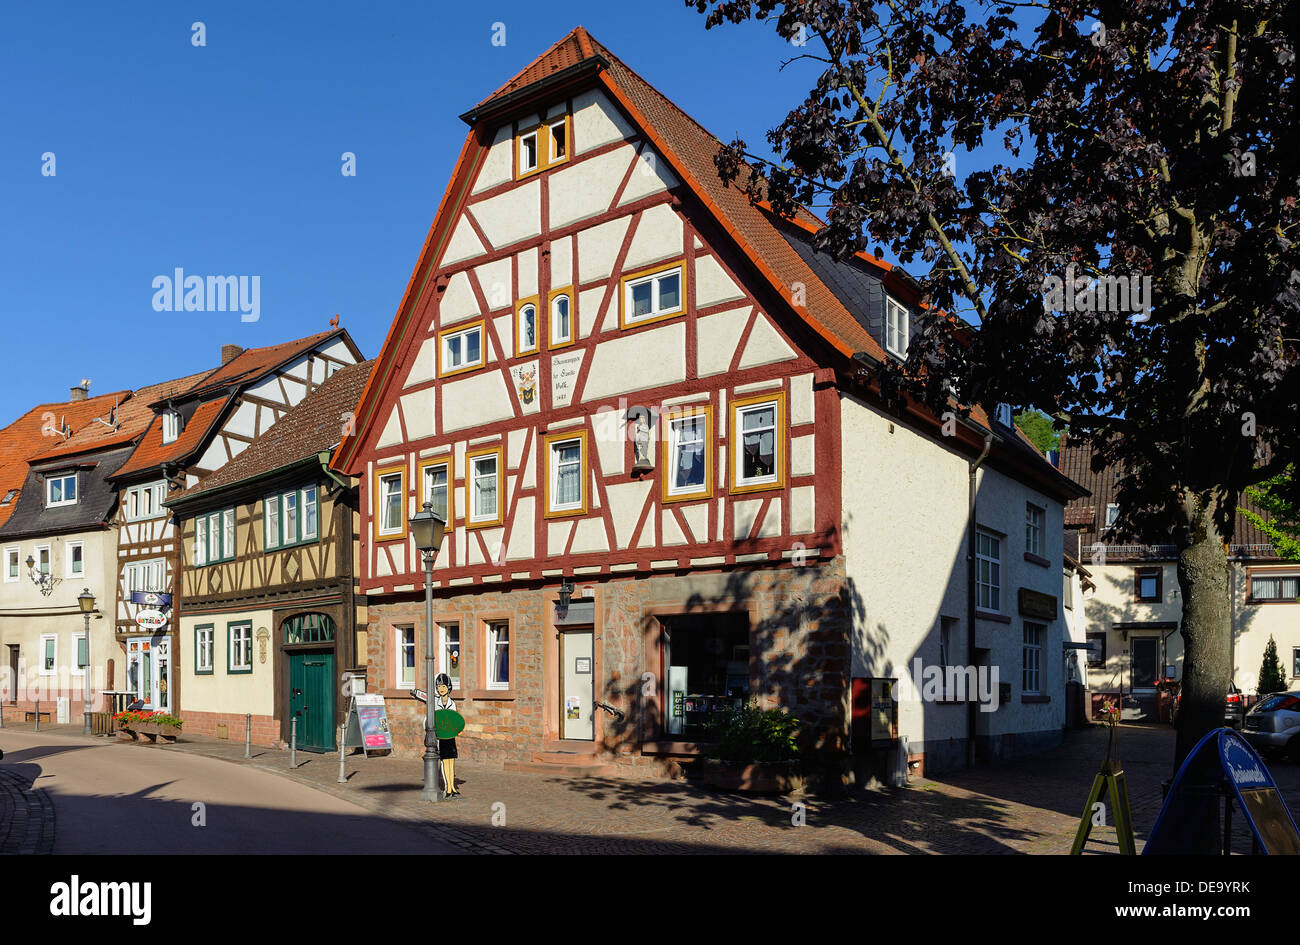 Maison à pans de bois de Obernburg sur-Main, Allemagne Banque D'Images